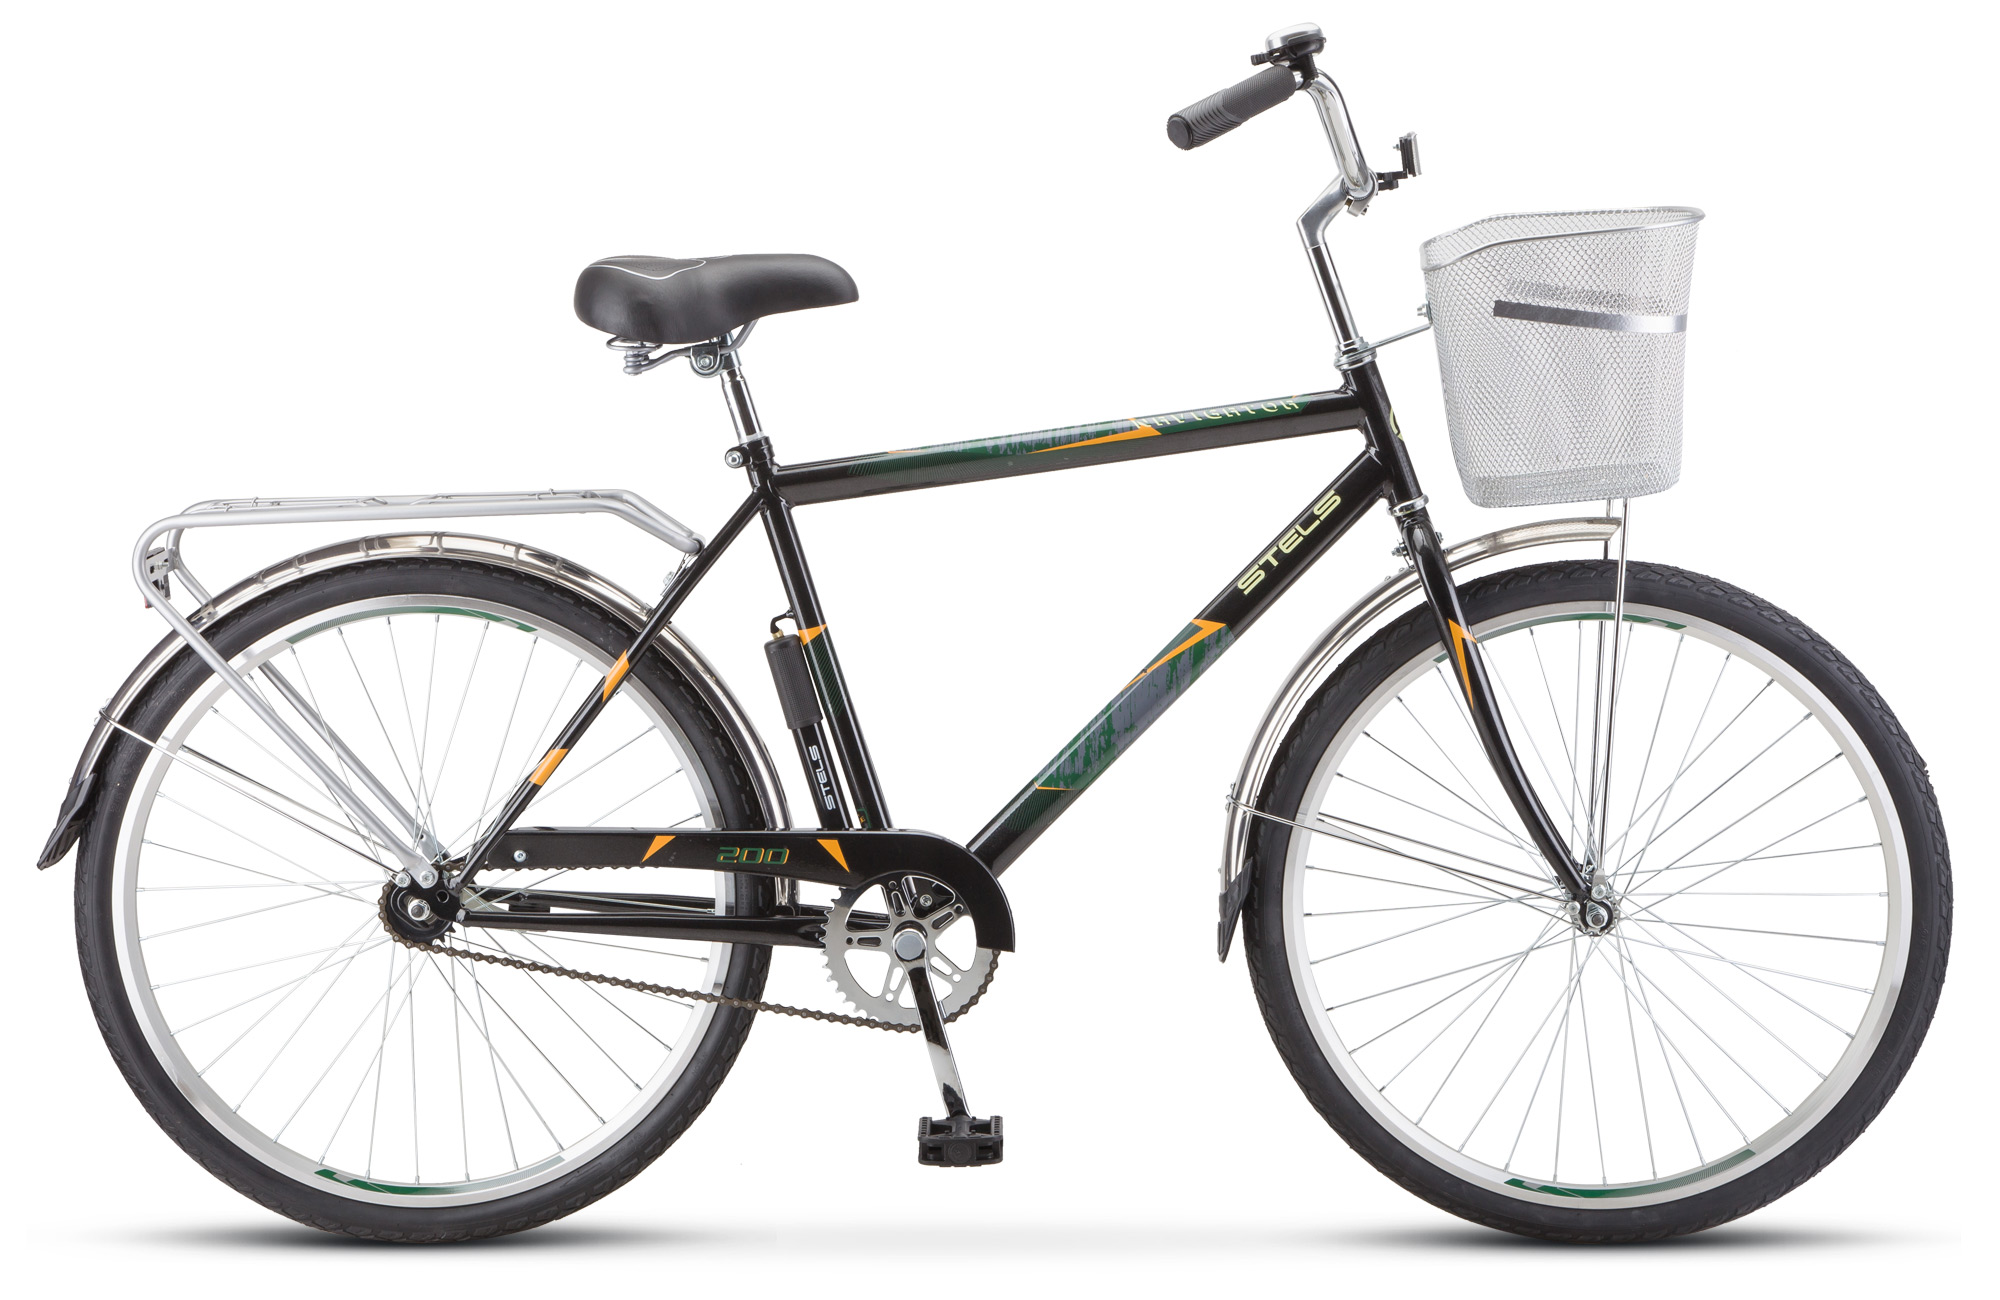  Отзывы о Городском велосипеде Stels Navigator 200 Gent Z010 2020